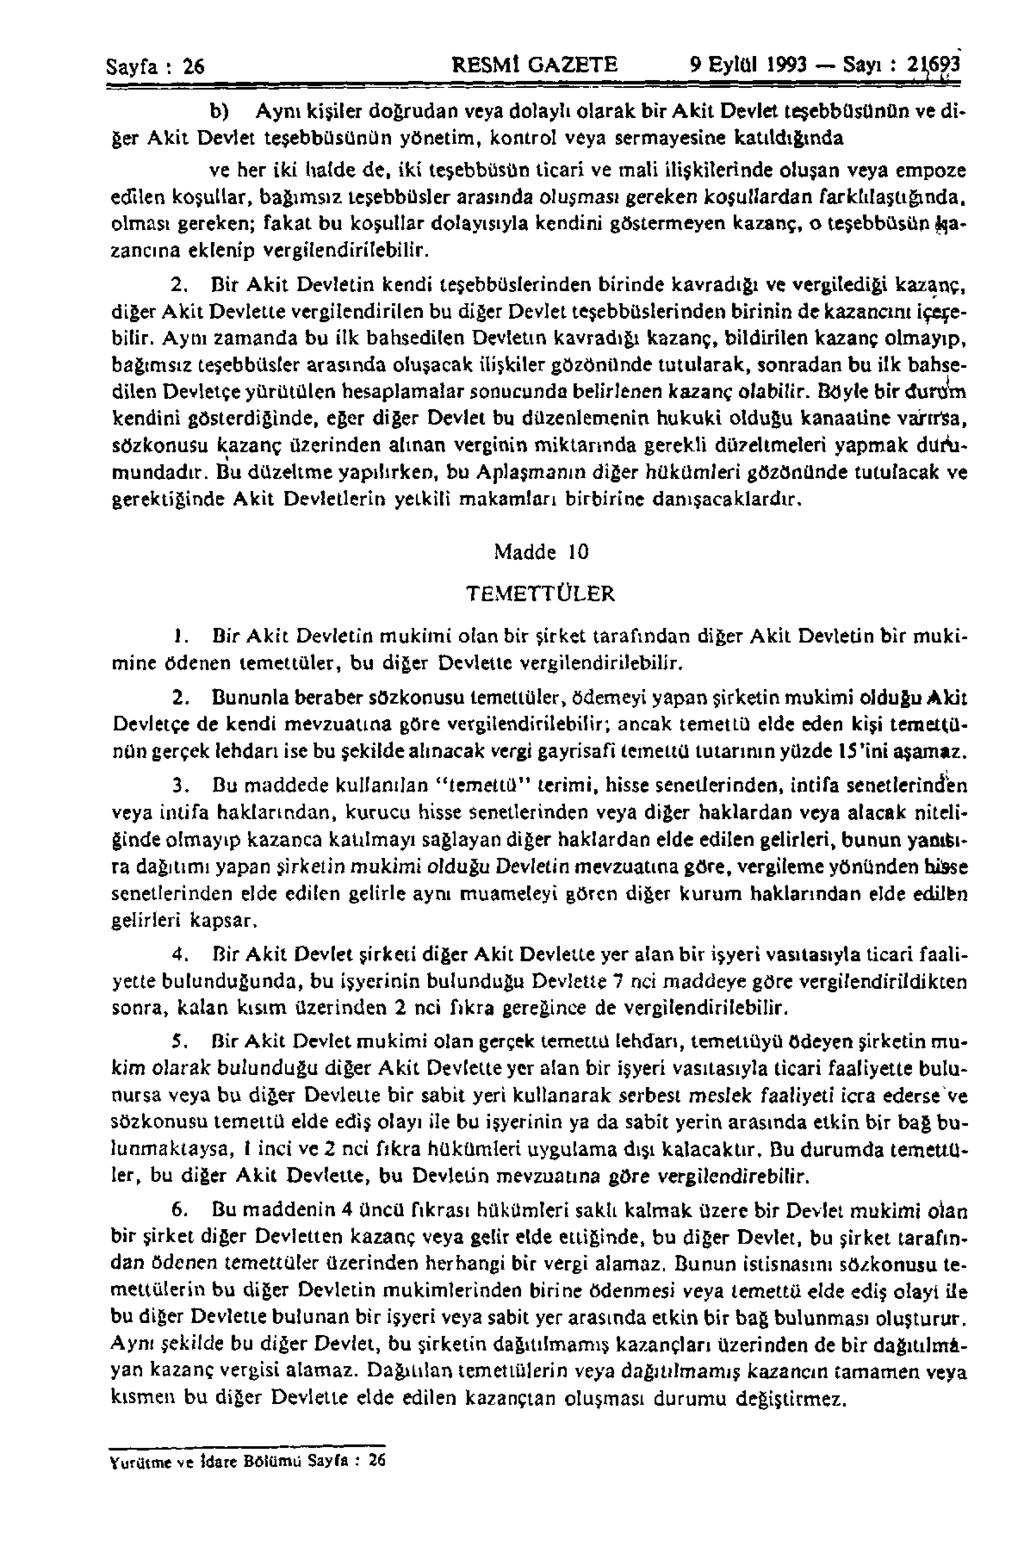 Sayfa : 26 RESMİ GAZETE 9 Eylül 1993 Sayı : 21,693 b) Aynı kişiler doğrudan veya dolaylı olarak bir Akit Devlet teşebbüsünün ve diğer Akit Devlet teşebbüsünün yönetim, kontrol veya sermayesine